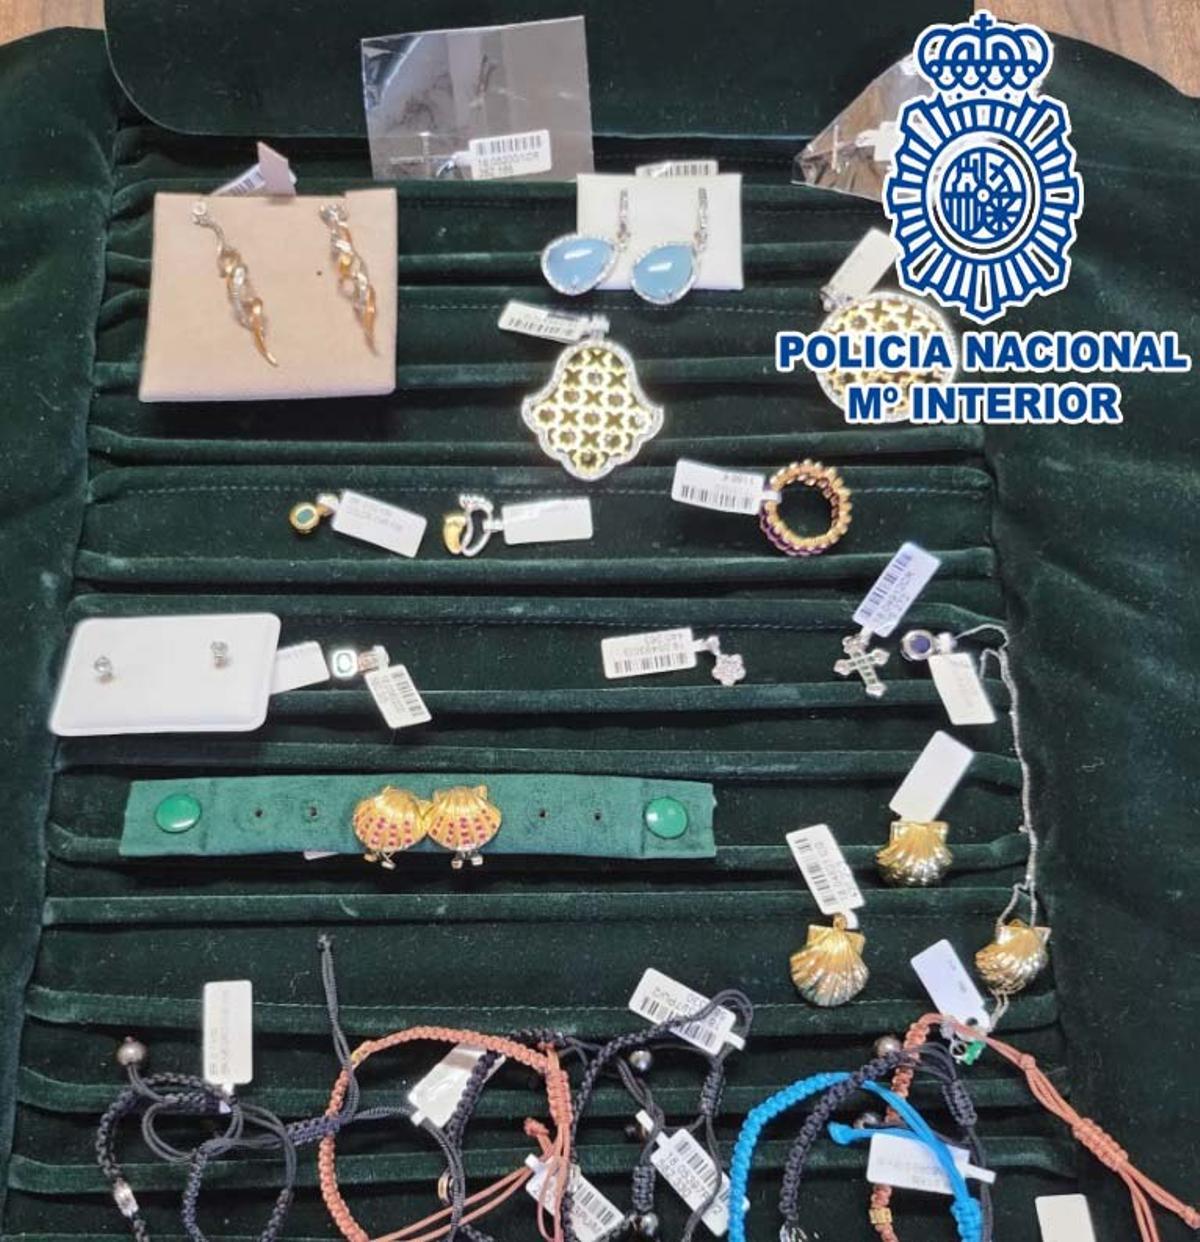 Muestrario de joyas por valor de 12.000 euros perdido en A Coruña y encontrado por una ciudadana que lo entregó a la policía.